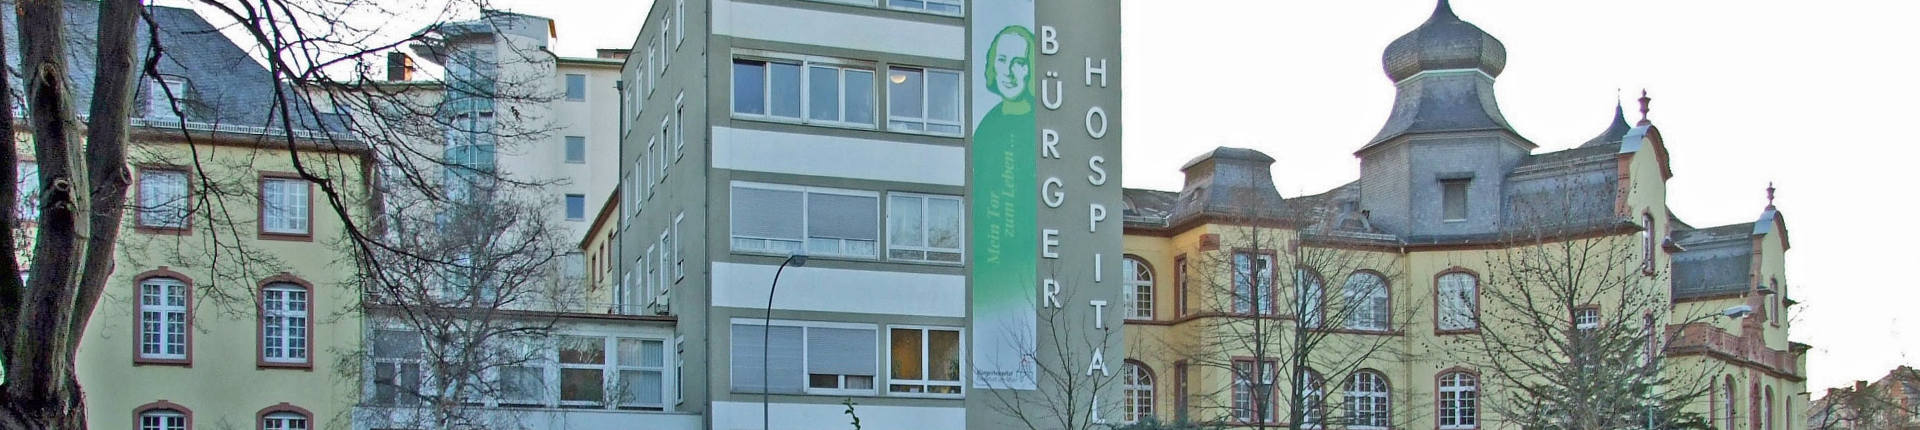 Бюргер госпиталь в Франкфурте-на-Майне